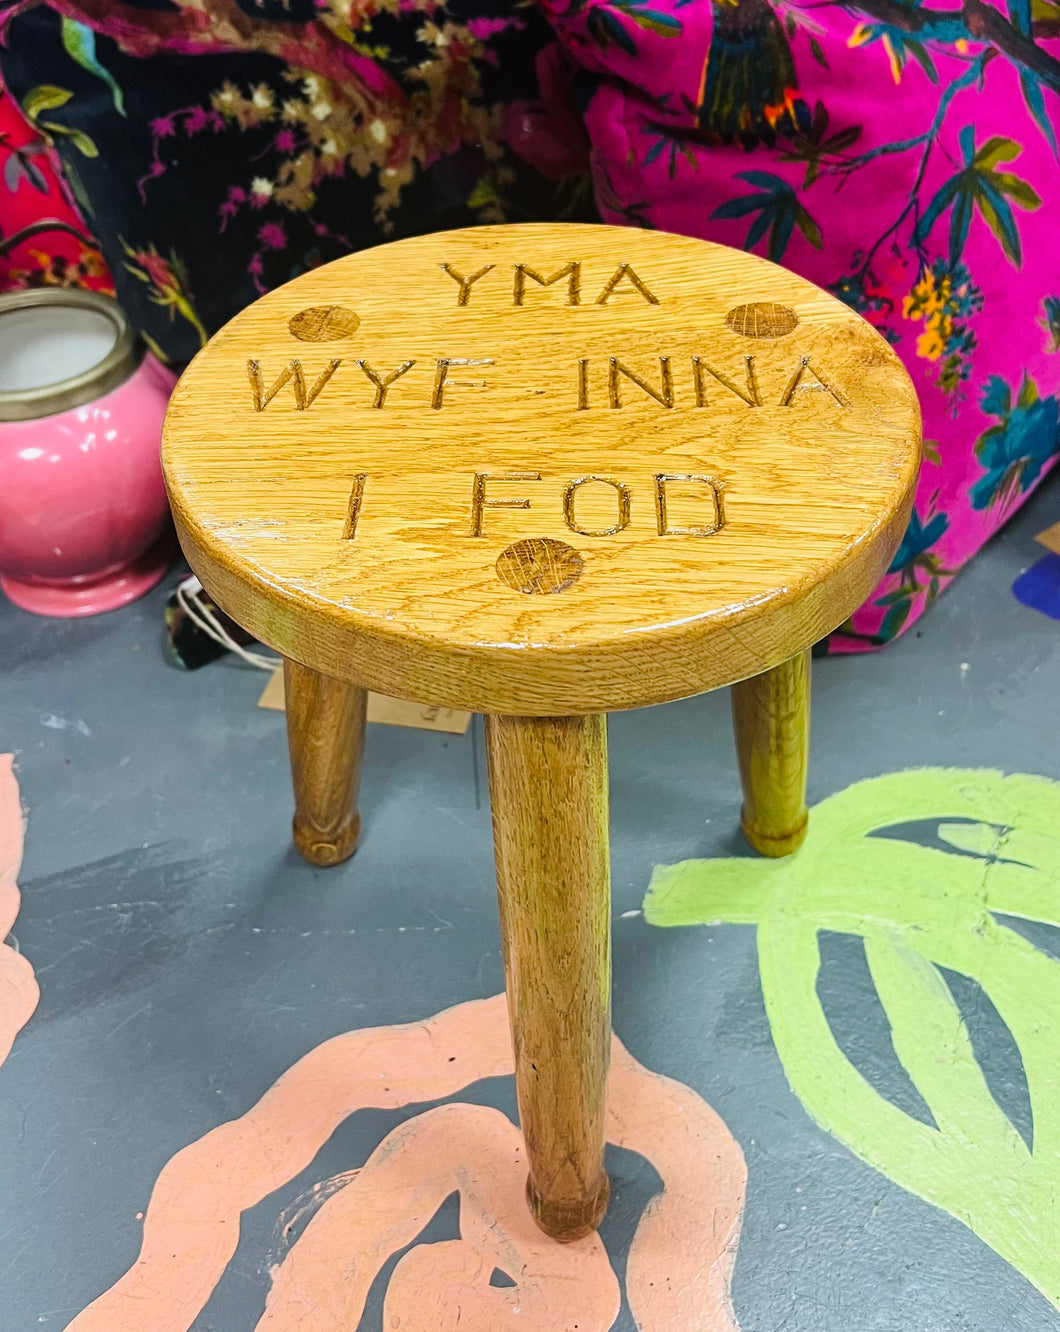 Stôl dderw Cymreig ‘Yma wyf inna i fod’ wedi ei gwneud â llaw / ‘Yma wyf inna i fod’ hand made three legged Welsh oak stool